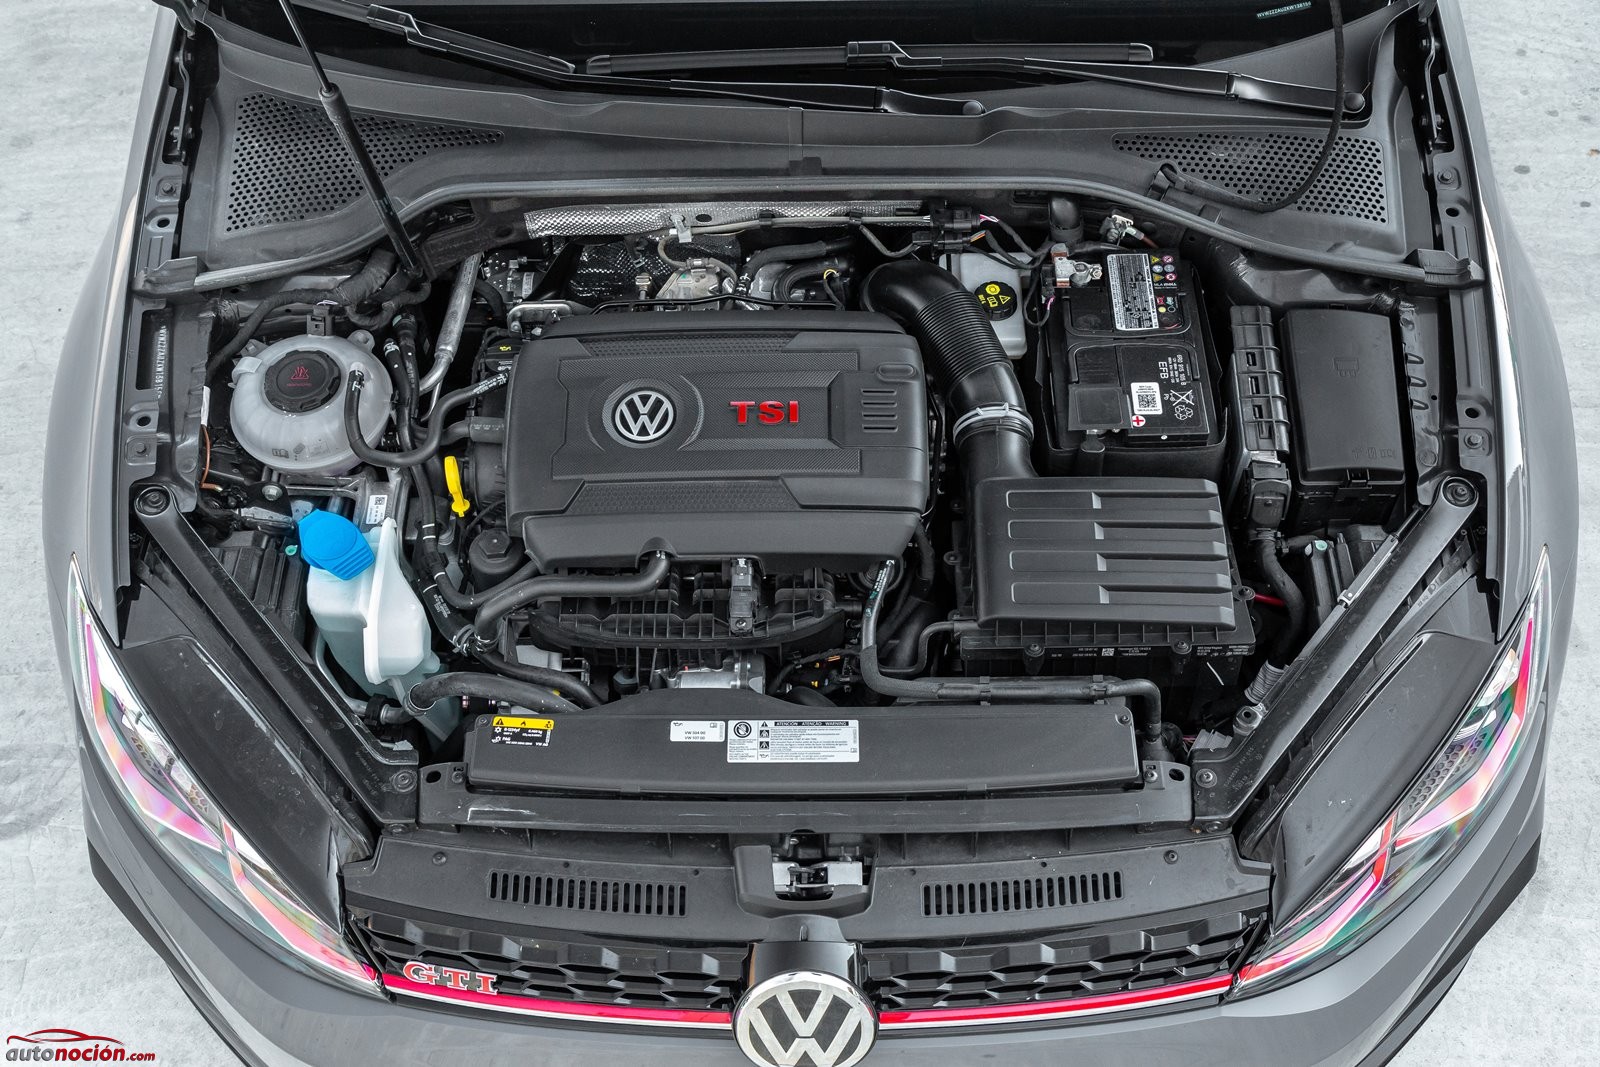 sofá agujero personalizado Opinión y prueba Volkswagen Golf GTI TCR 290 CV 2019